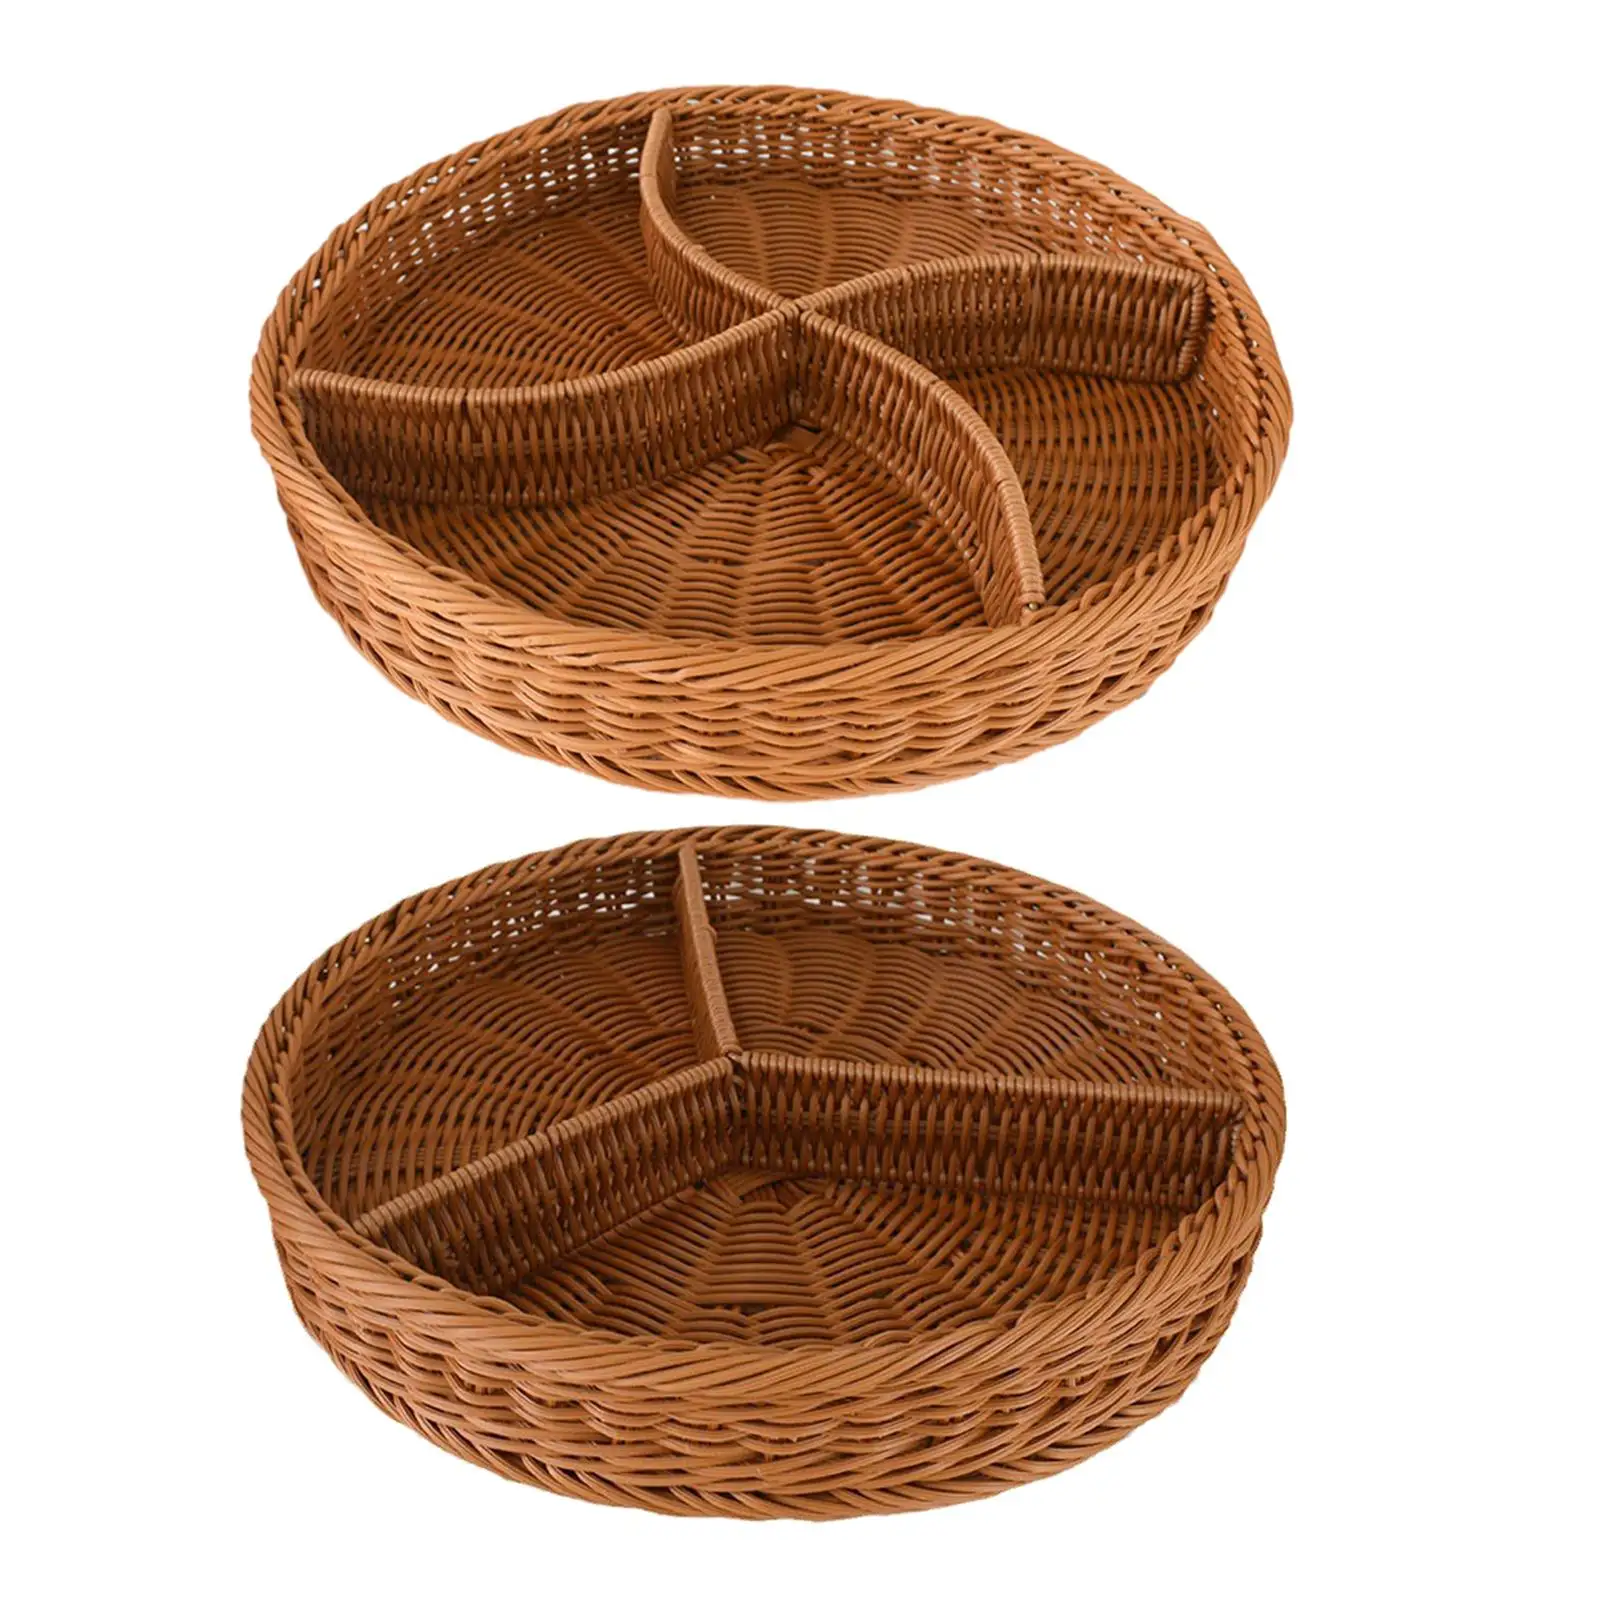 Wicker Woven Breads Baskets Decorative Kitchen Organizer Hand Woven Serving Basket for Breakfast Restaurant Kitchen Fruits